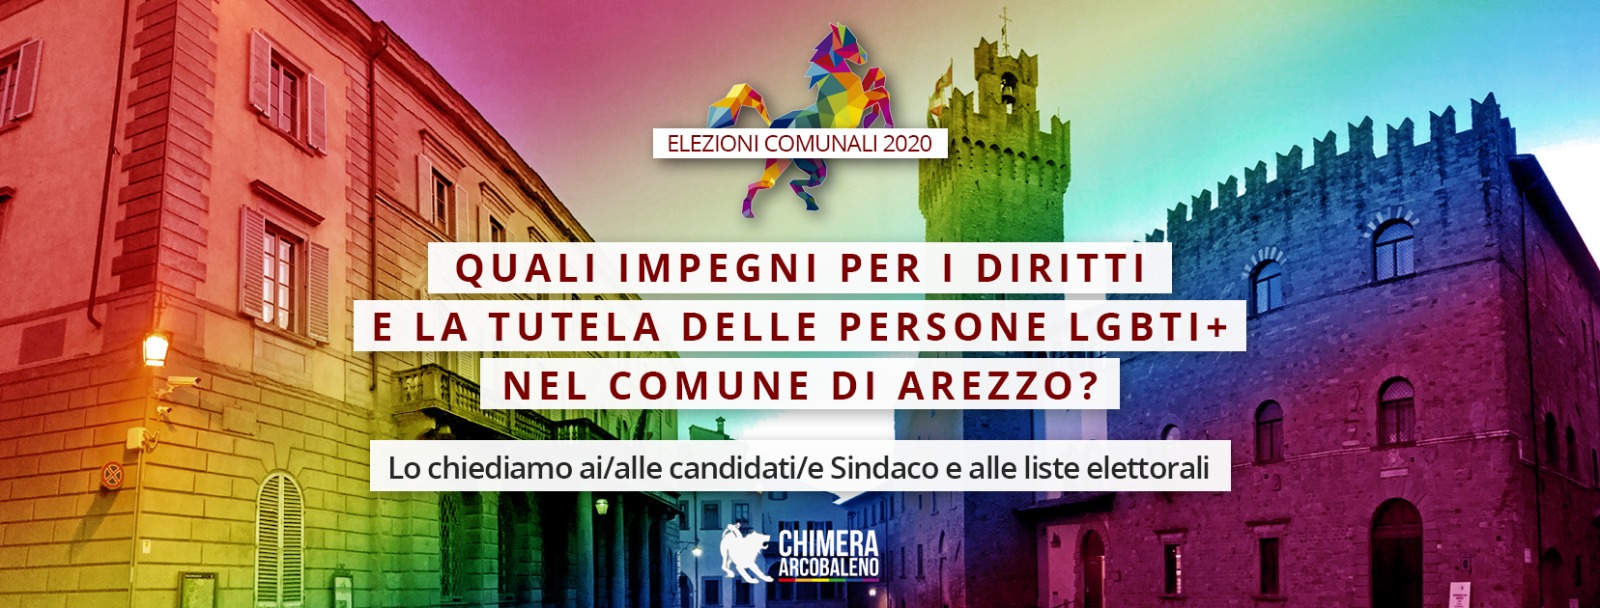 Quali impegni per i diritti e la tutela delle persone LGBTI+ di Arezzo?